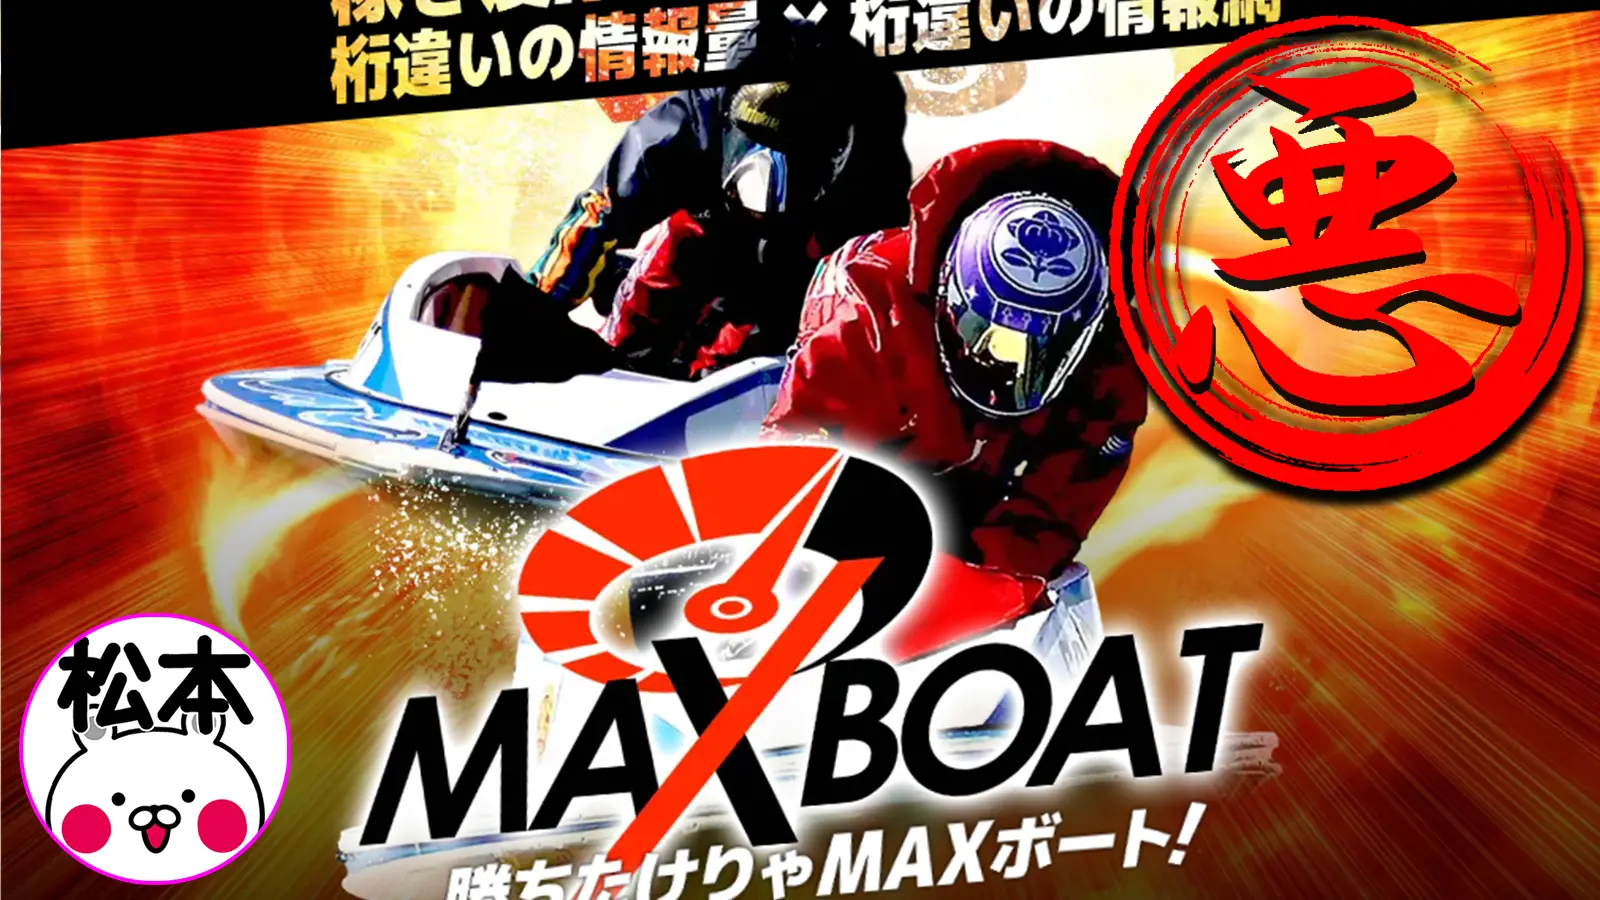 検証の結果、悪徳競艇予想サイトとして認定された競艇予想サイトのMAX BOAT（マックスボート）のサムネイル画像